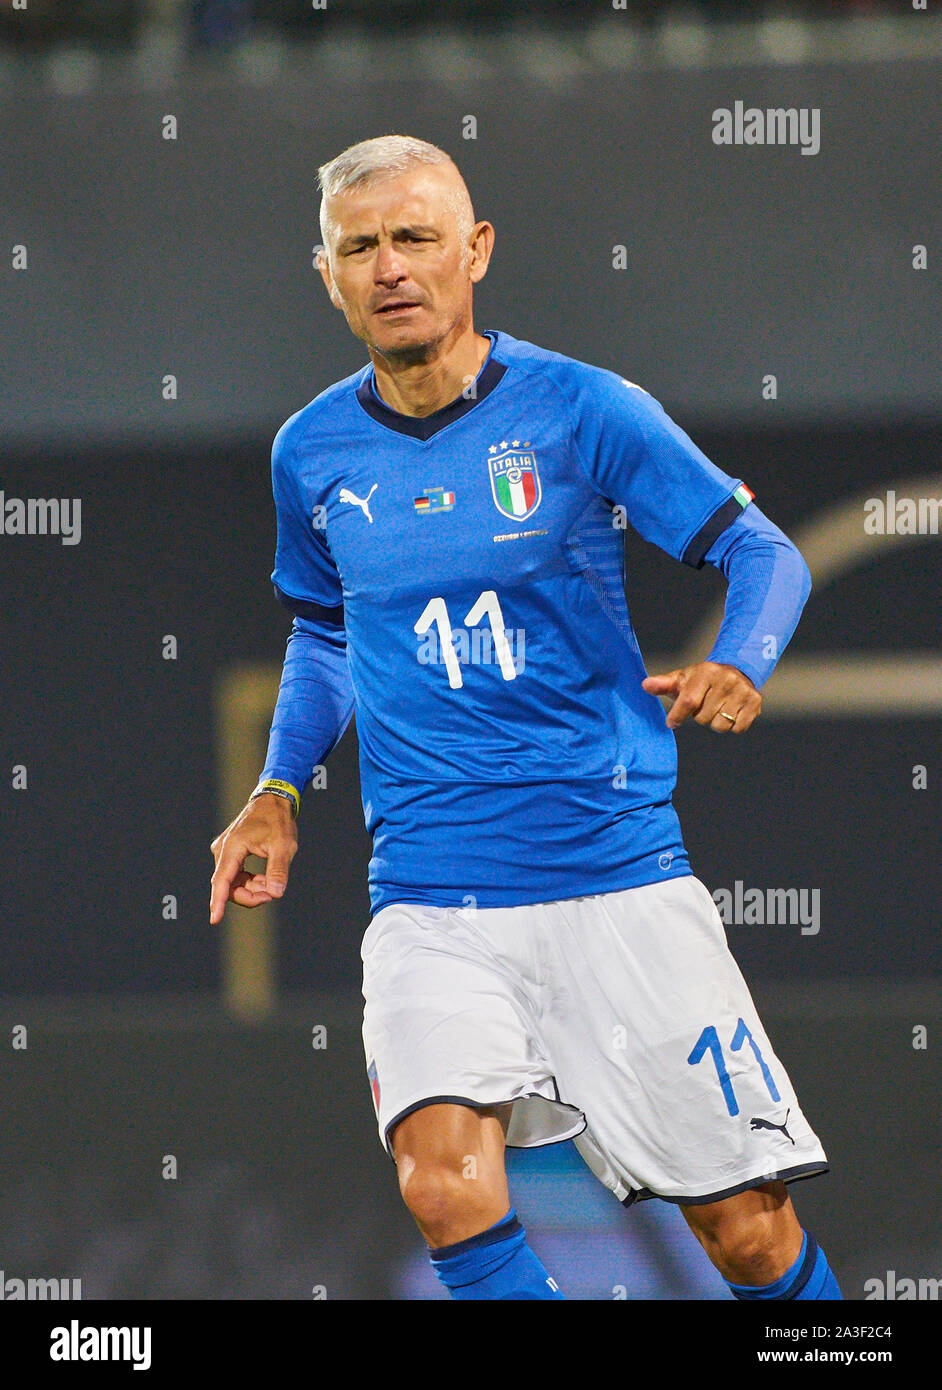 Fabrizio Ravanelli :: Player Profile 